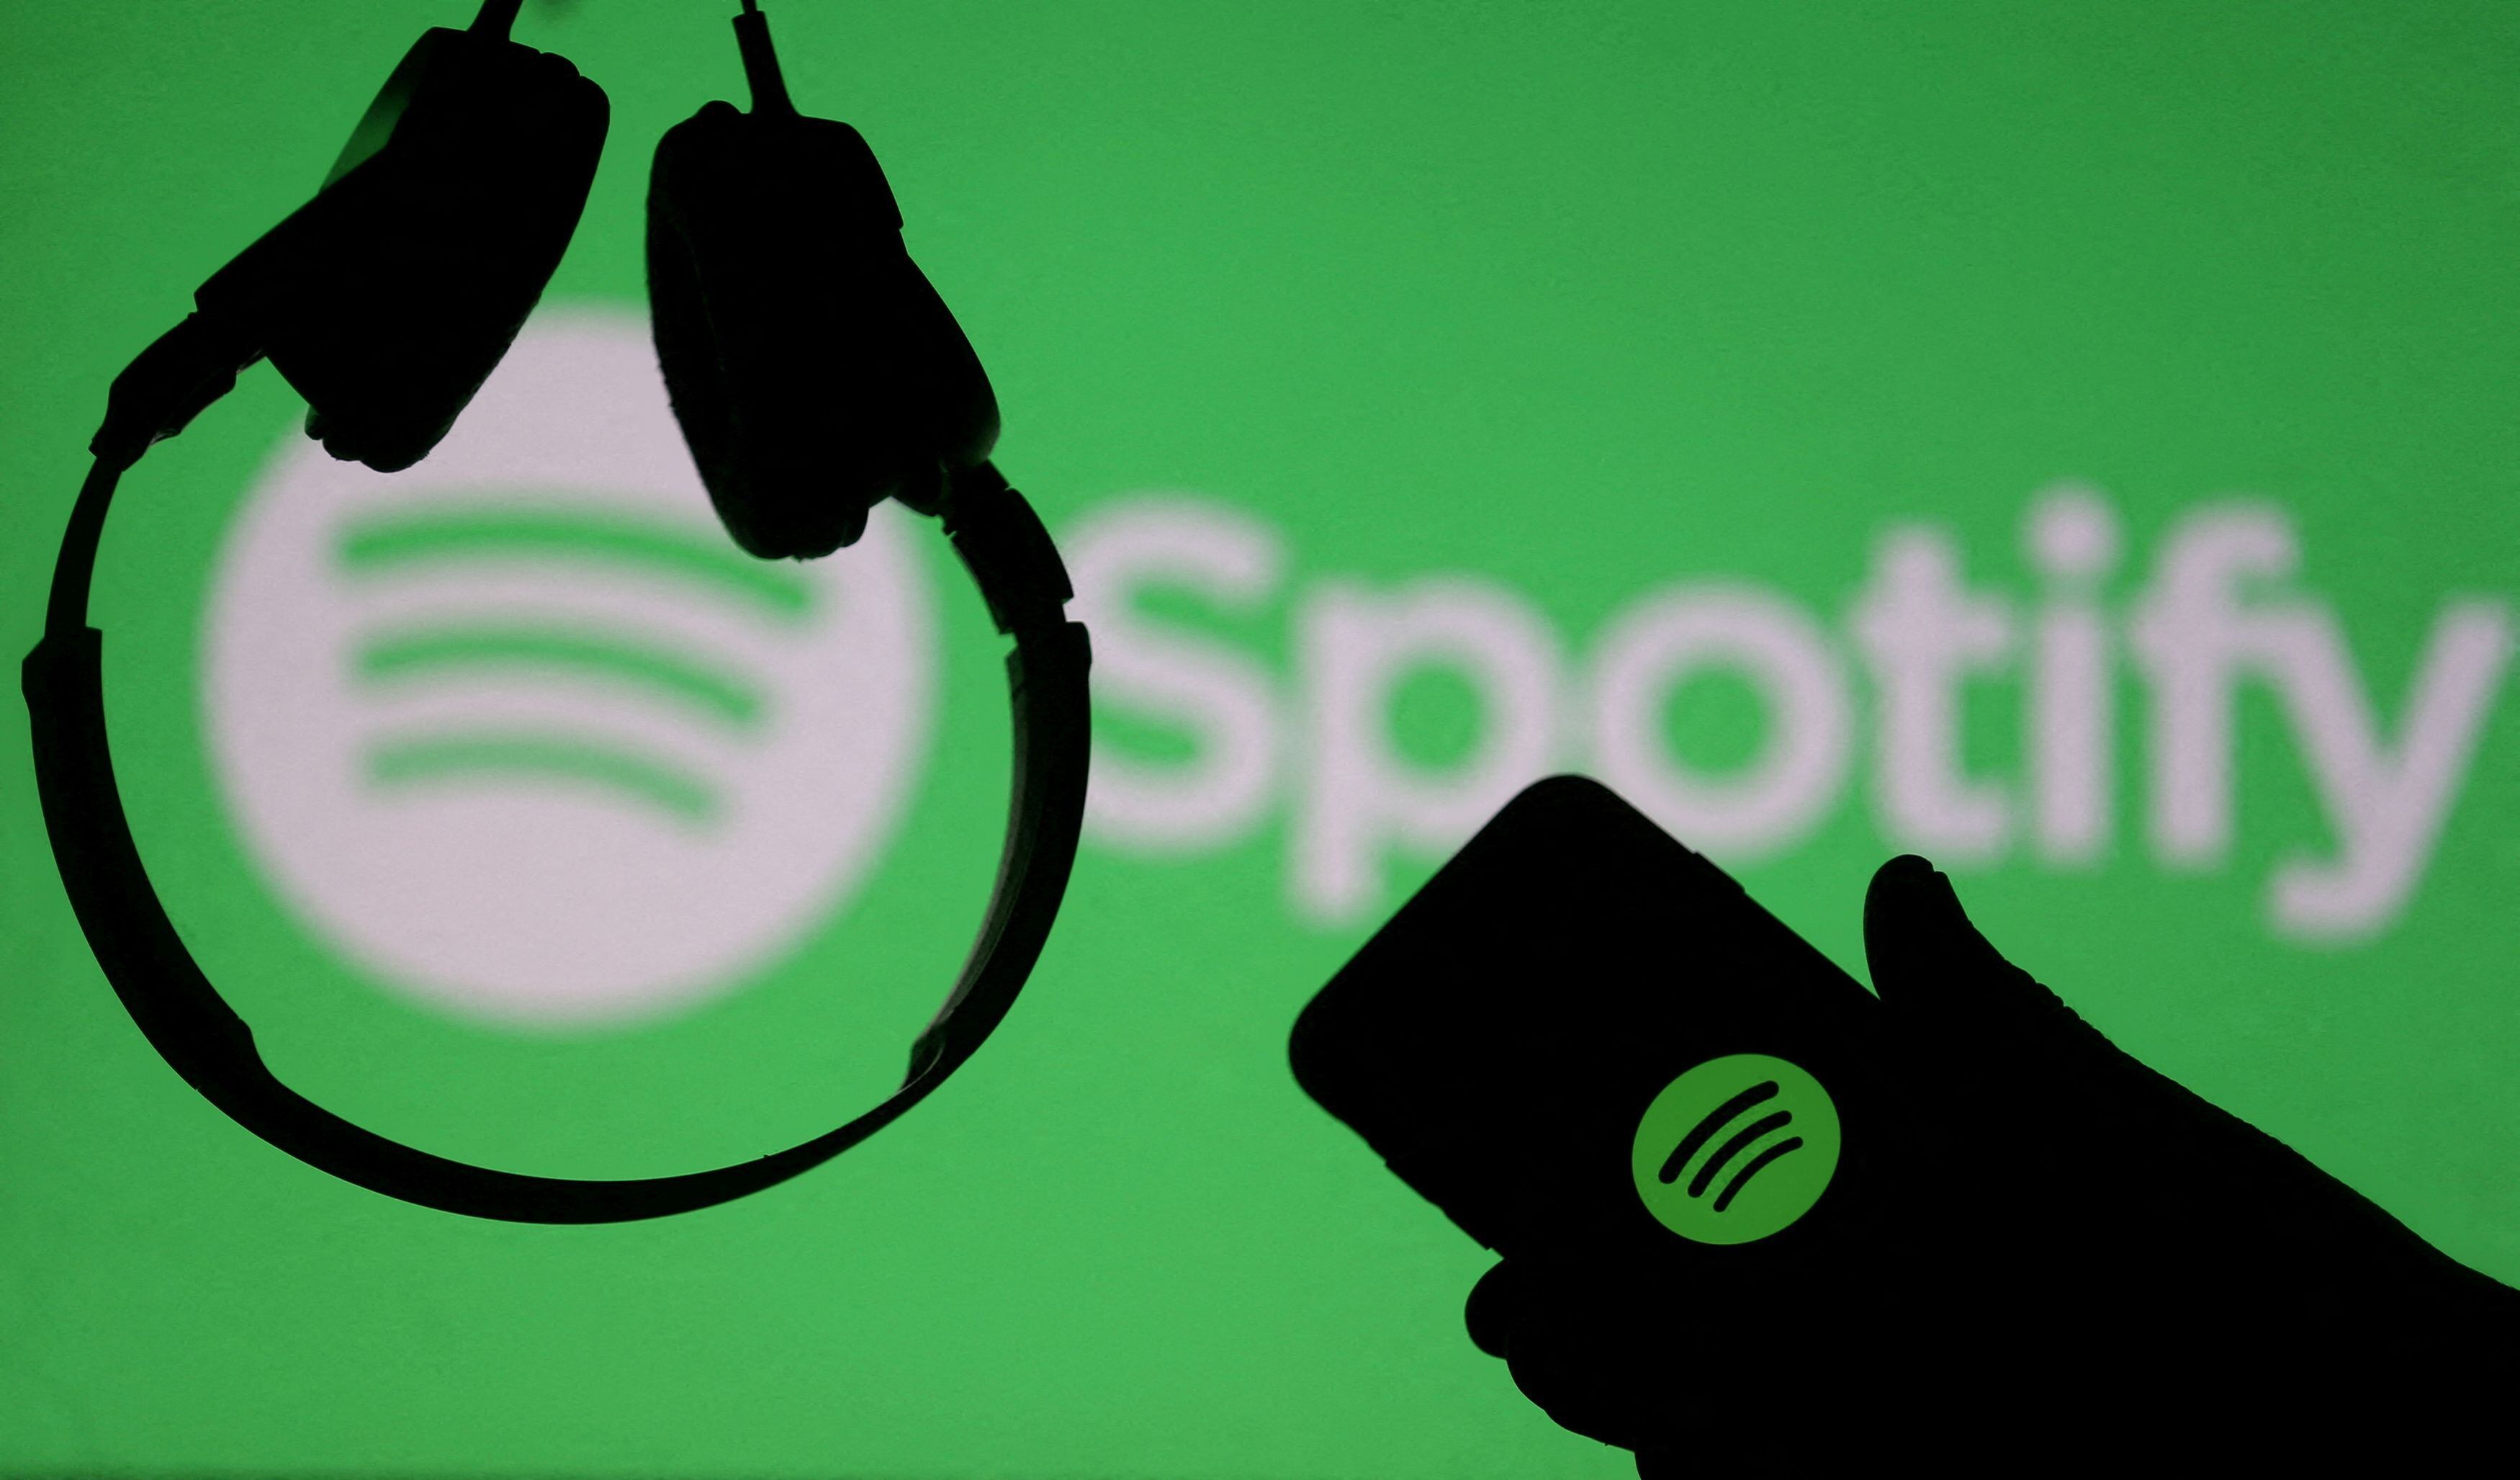 Instafest: como fazer line-up do seu festival de música no Spotify